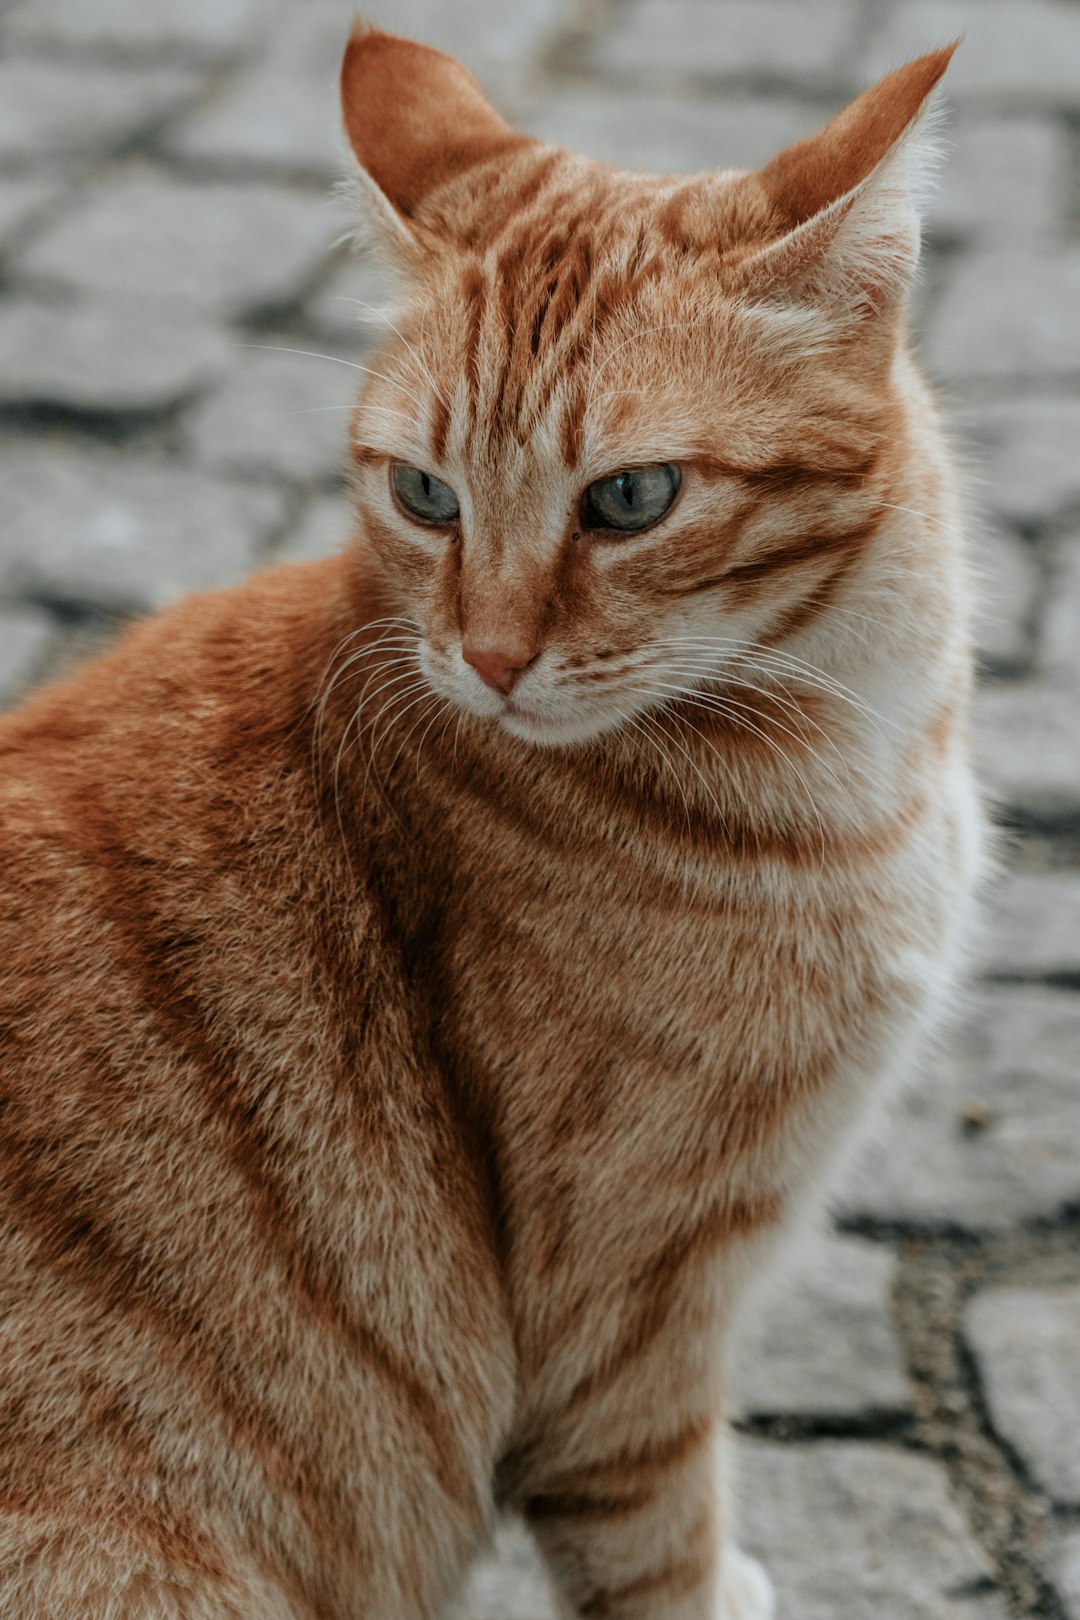 orange tabby cat on gray concrete floor during daytime